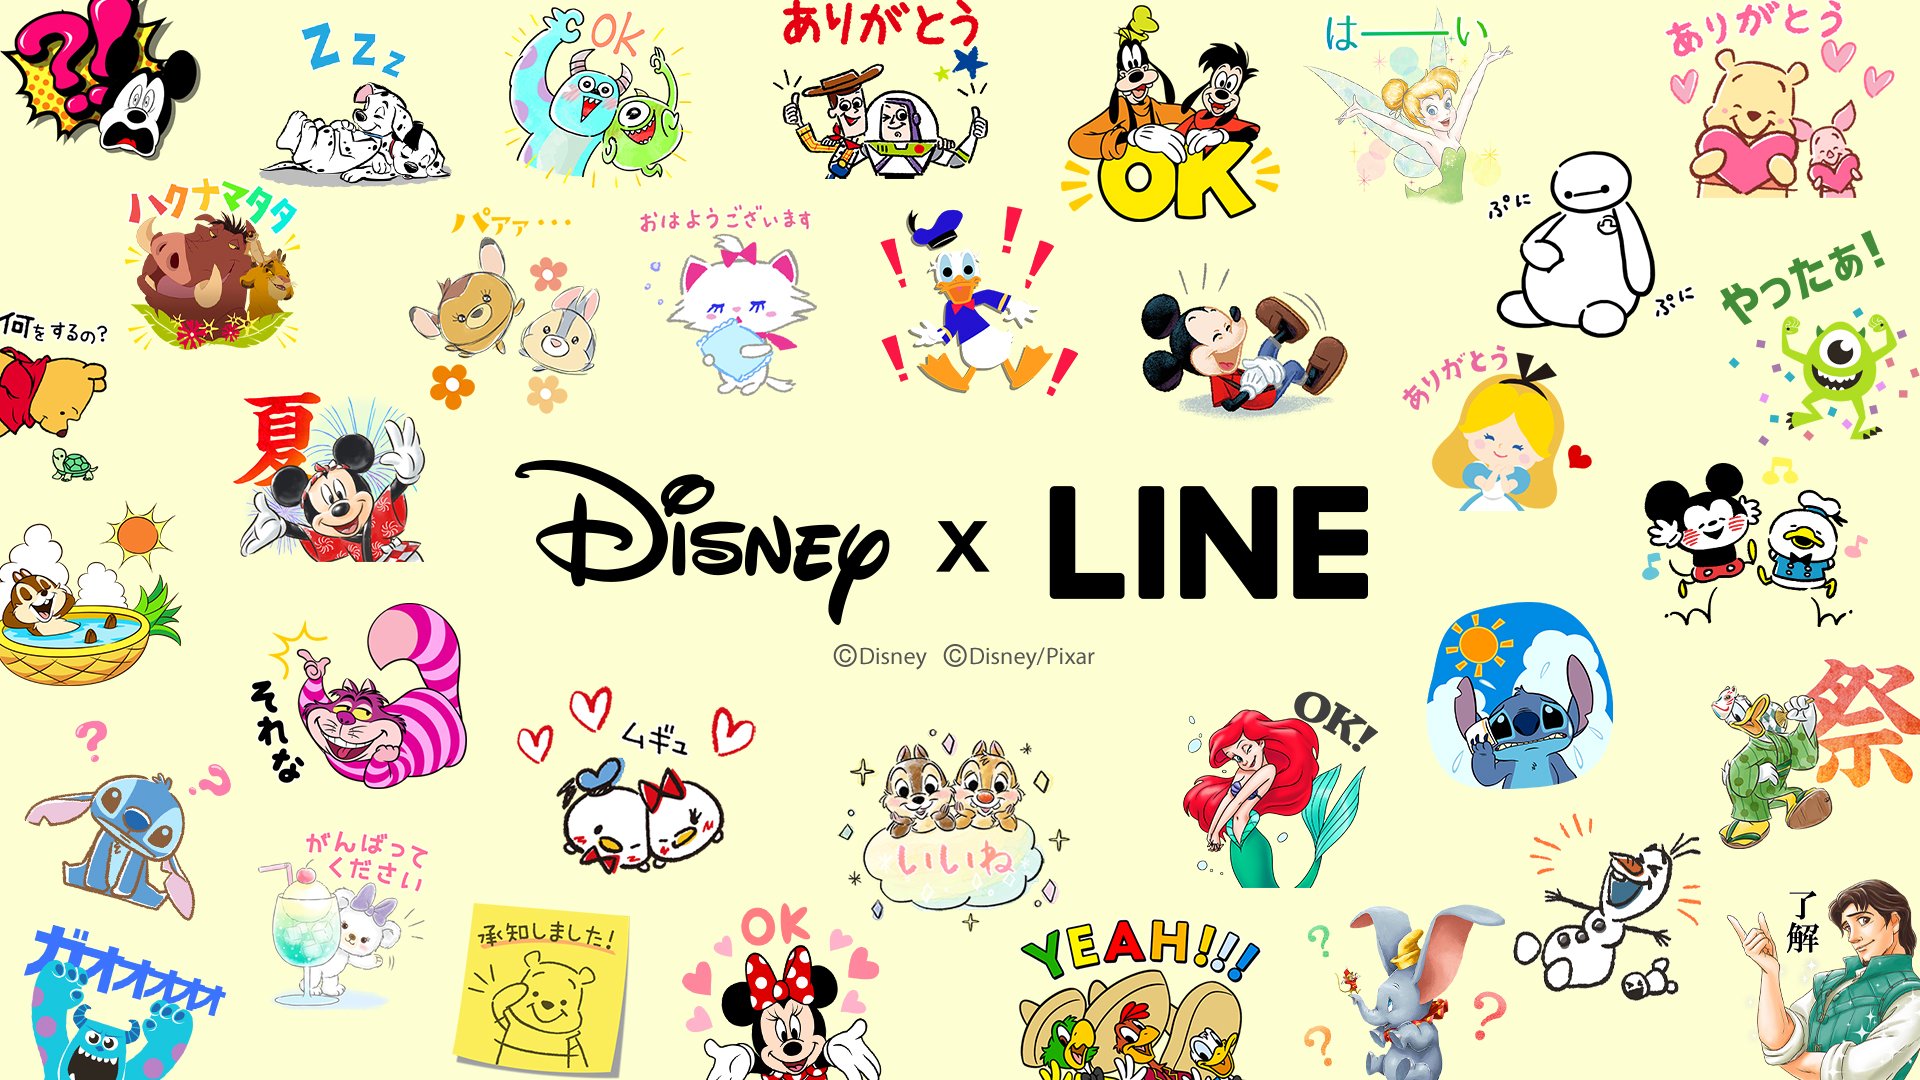 ディズニー公式 ディズニースタンプ取り放題はじまる ディズニーのlineスタンプを使って 友だちとのトークを盛り上げよう Lineで楽しむディズニーの世界 Disneyxline 取り放題の対象など詳細はこちら T Co L2jhqv78ck